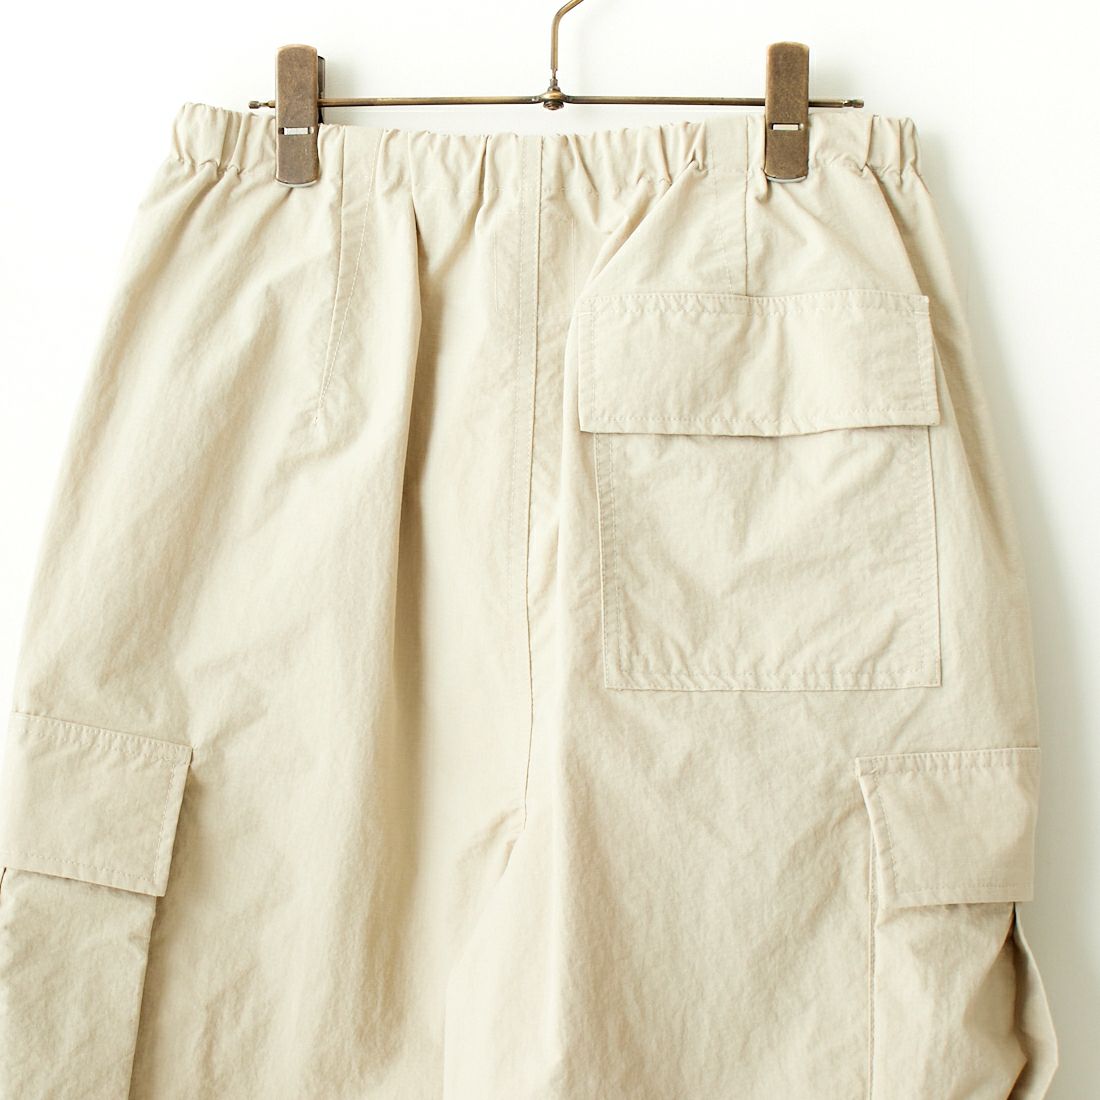 Jeans Factory Clothes [ジーンズファクトリークローズ] ウォッシャブルナイロン M-51カーゴパンツ [JFC-241-012] OFF